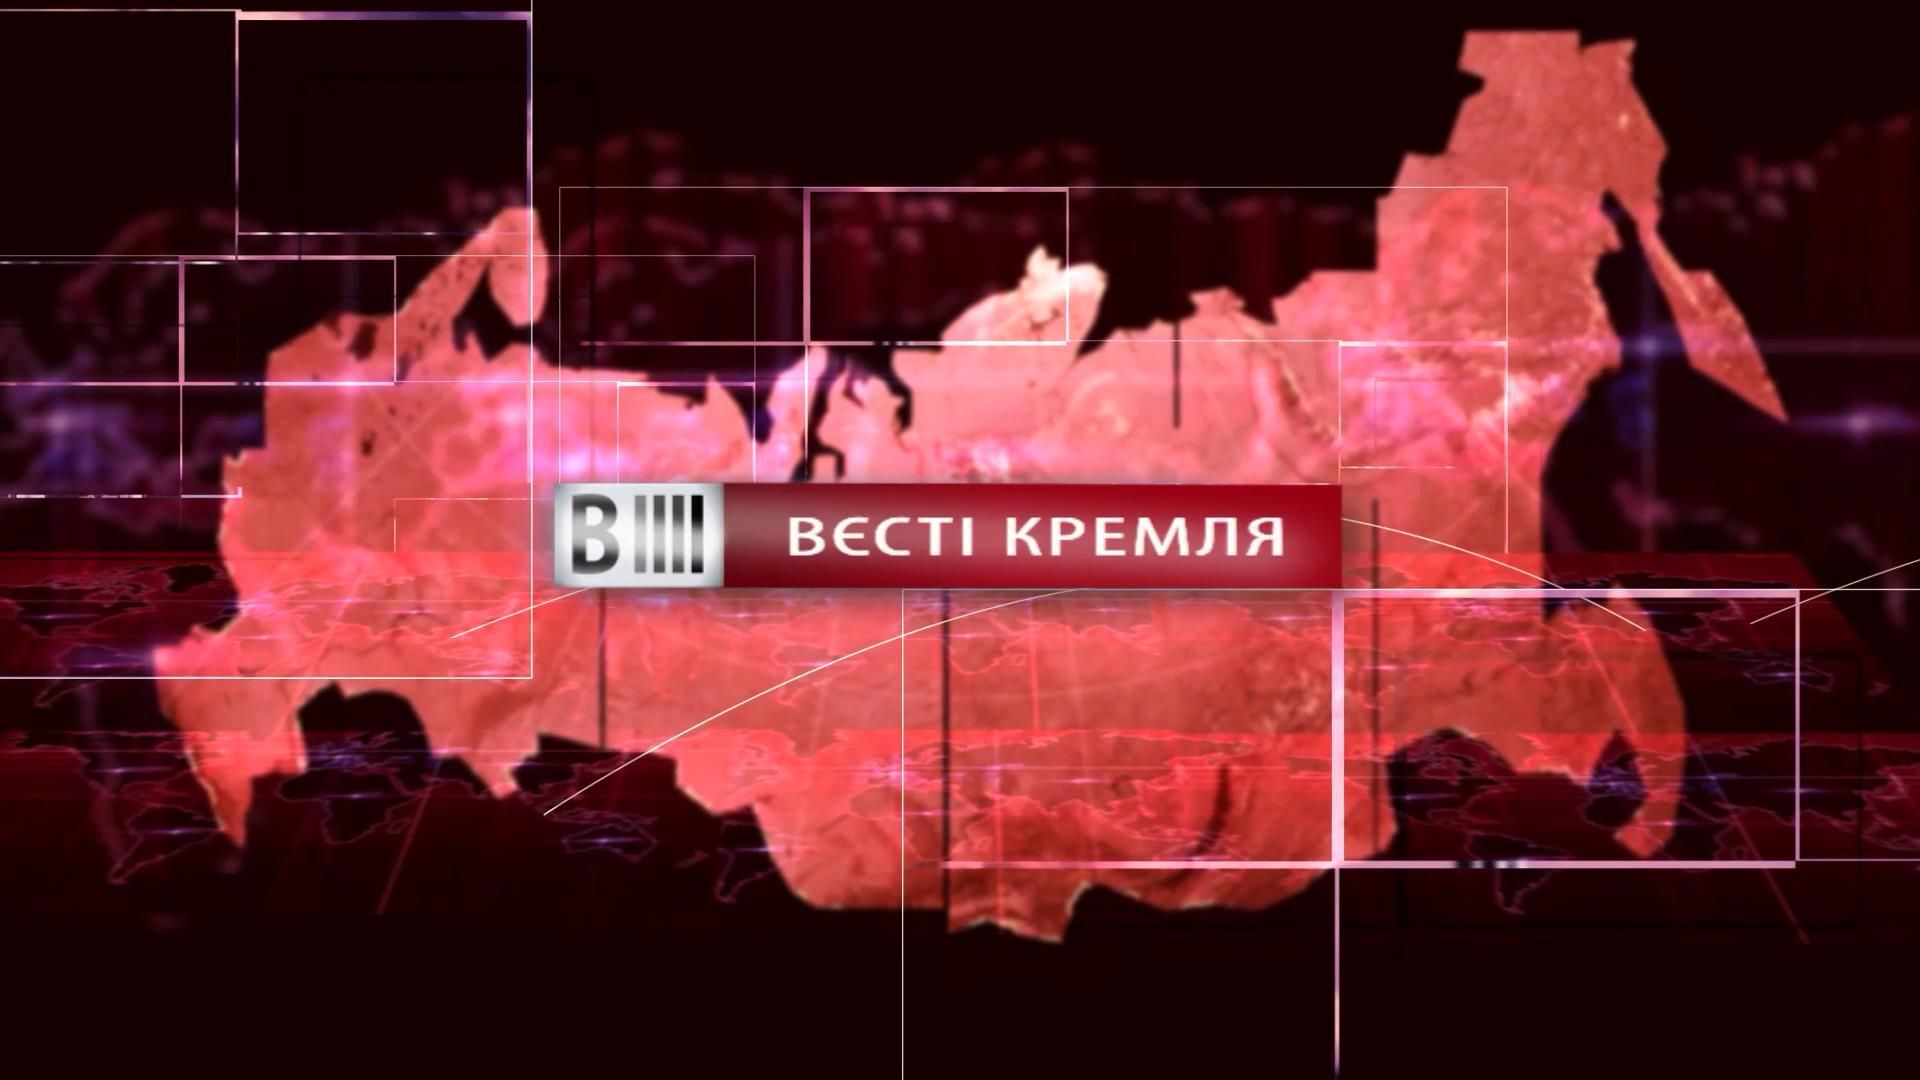 Дивіться "Вєсті Кремля". Віртуальна реальність для залізниці. Батут замість стадіону